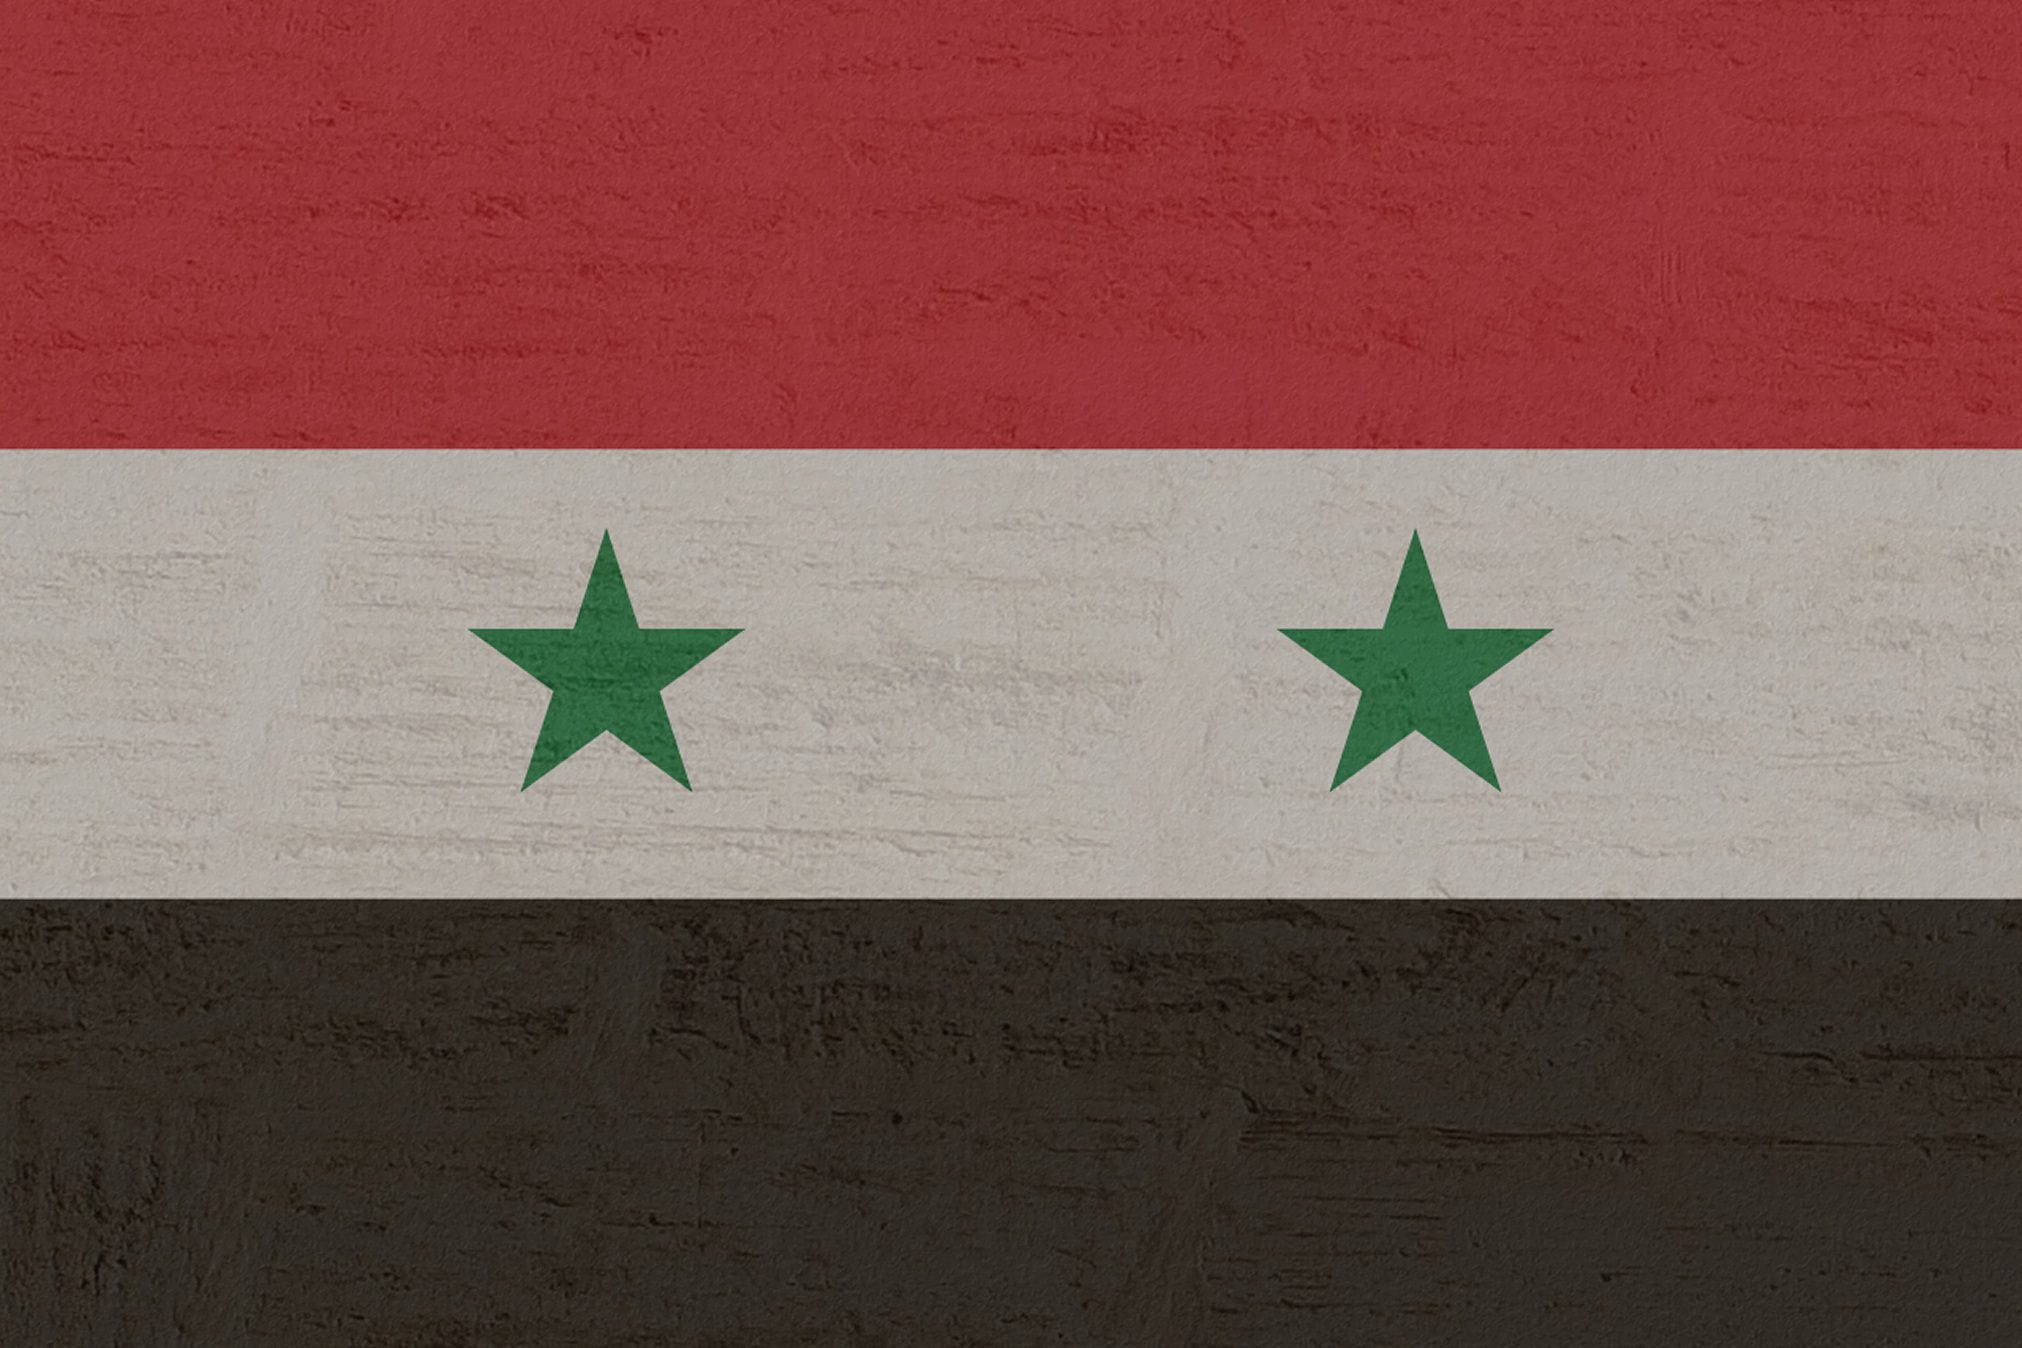 La salita al potere di Assad e il partito Ba’th in Siria